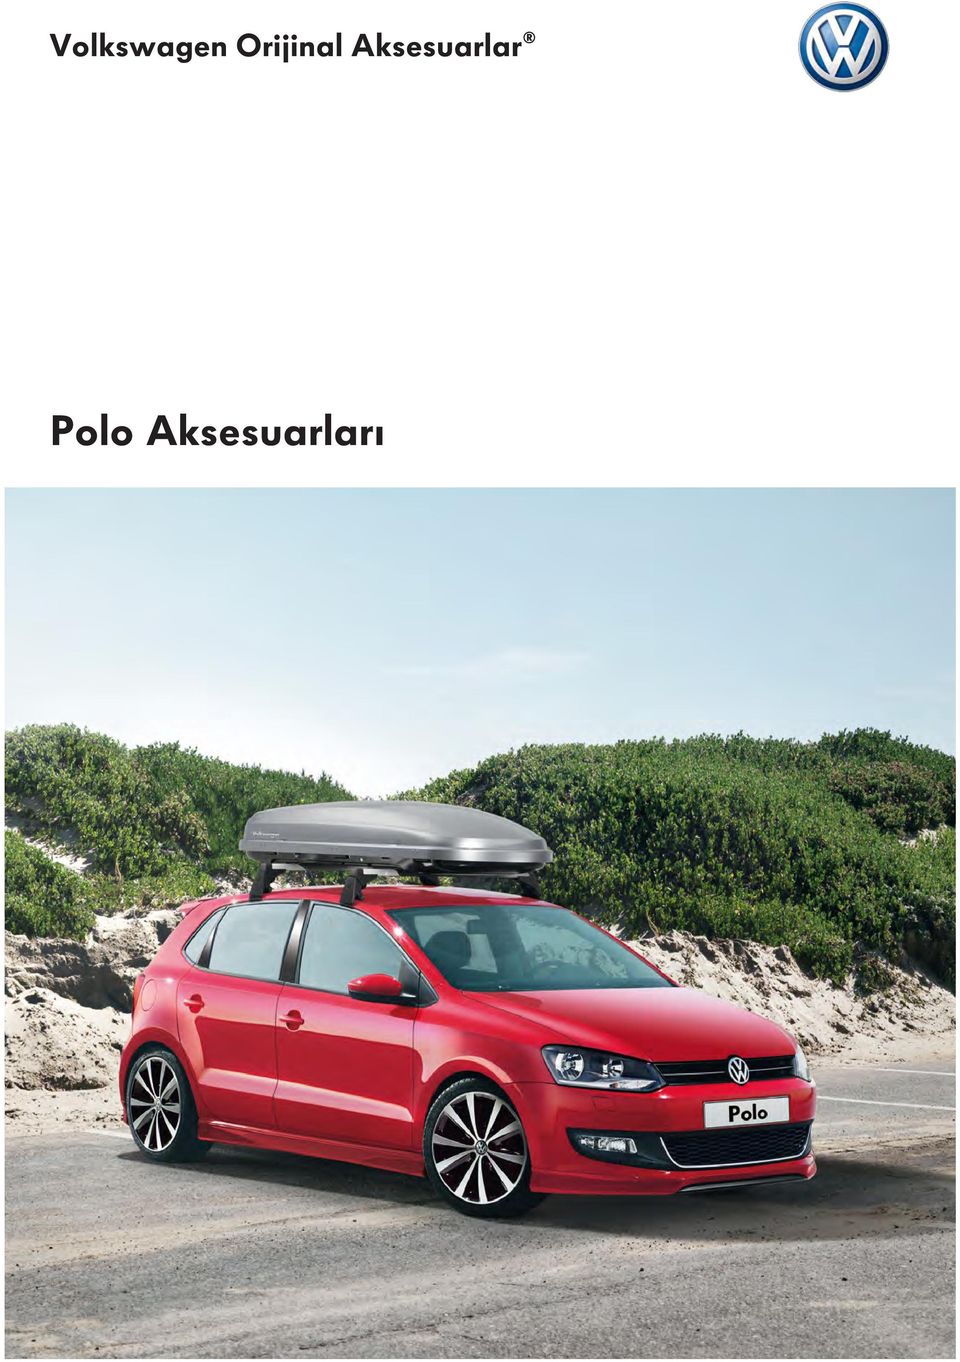 Volkswagen Orijinal Aksesuarlar. Polo Aksesuarları - PDF Ücretsiz indirin